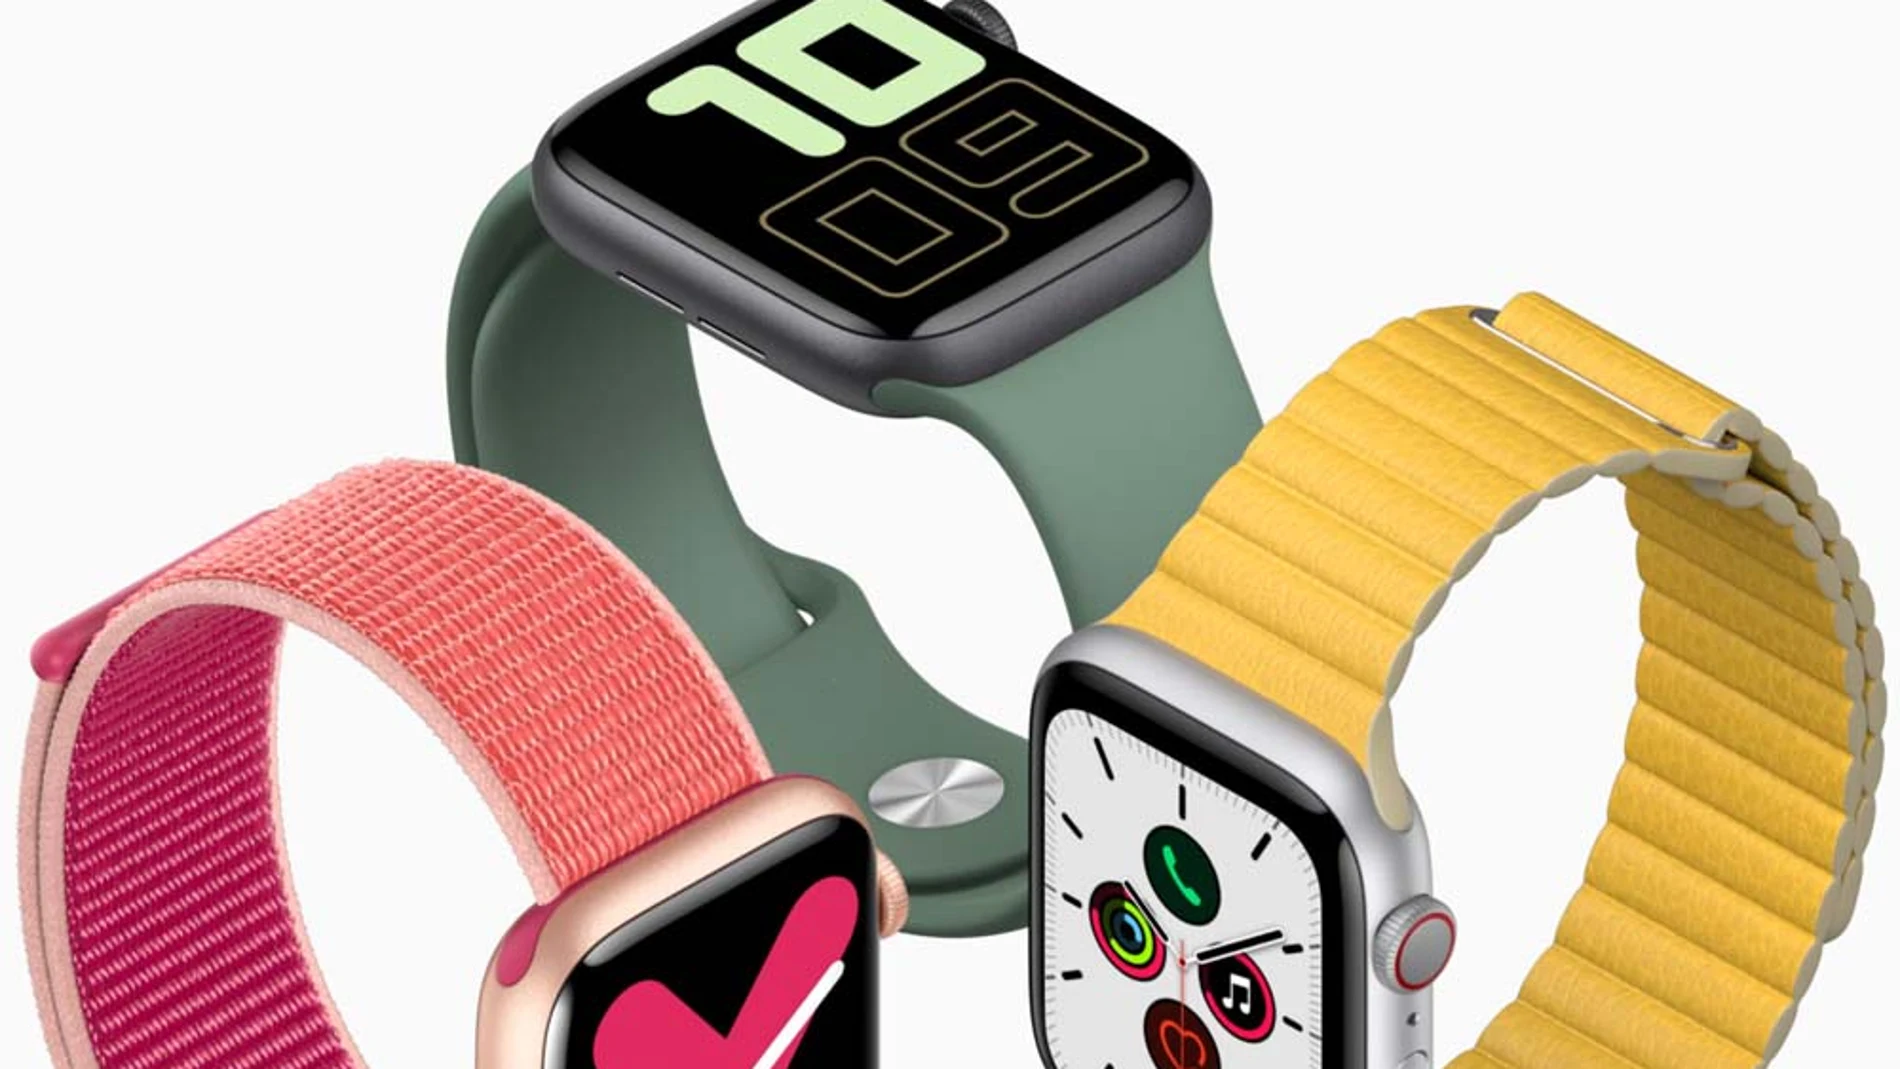 El Apple Watch Series 5 se lanzó el pasado mes de septiembre con nuevas funcionalidades de control de salud y un precio de partida de 449 euros.